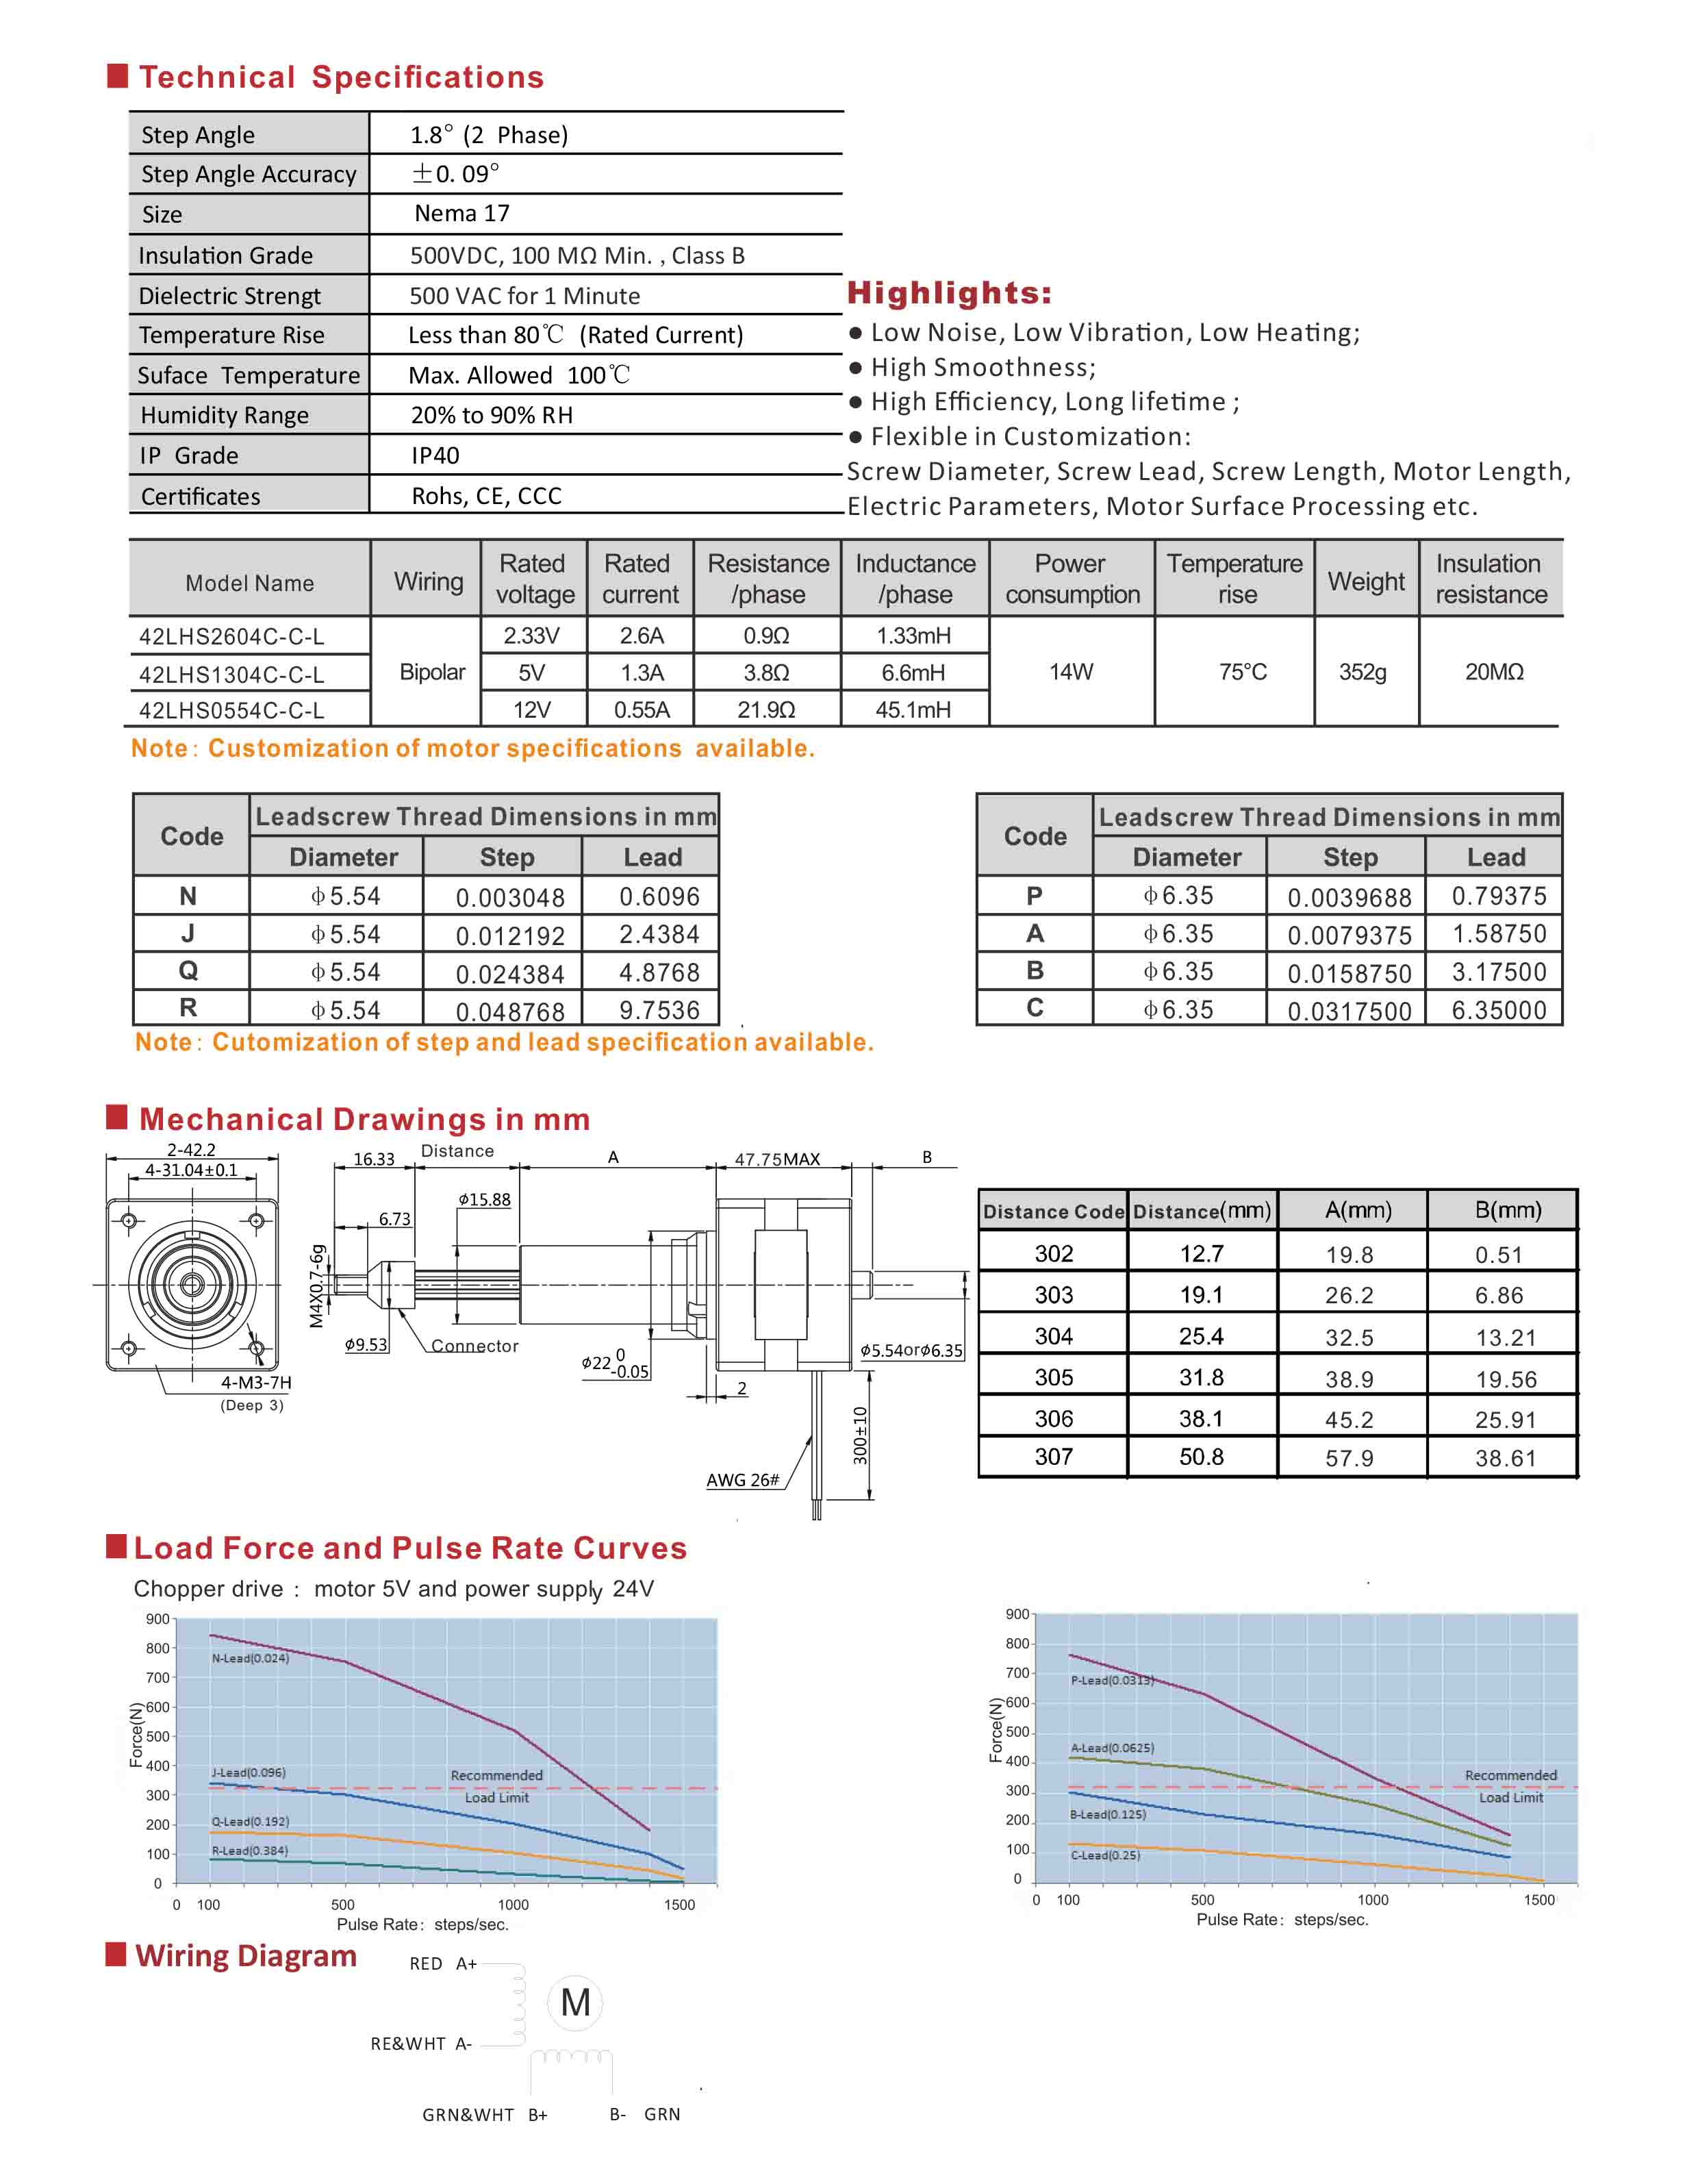 42LHS2604 1304 0554 Series Captive Hybrid Linear Stepper Motors Data Sheet.jpg